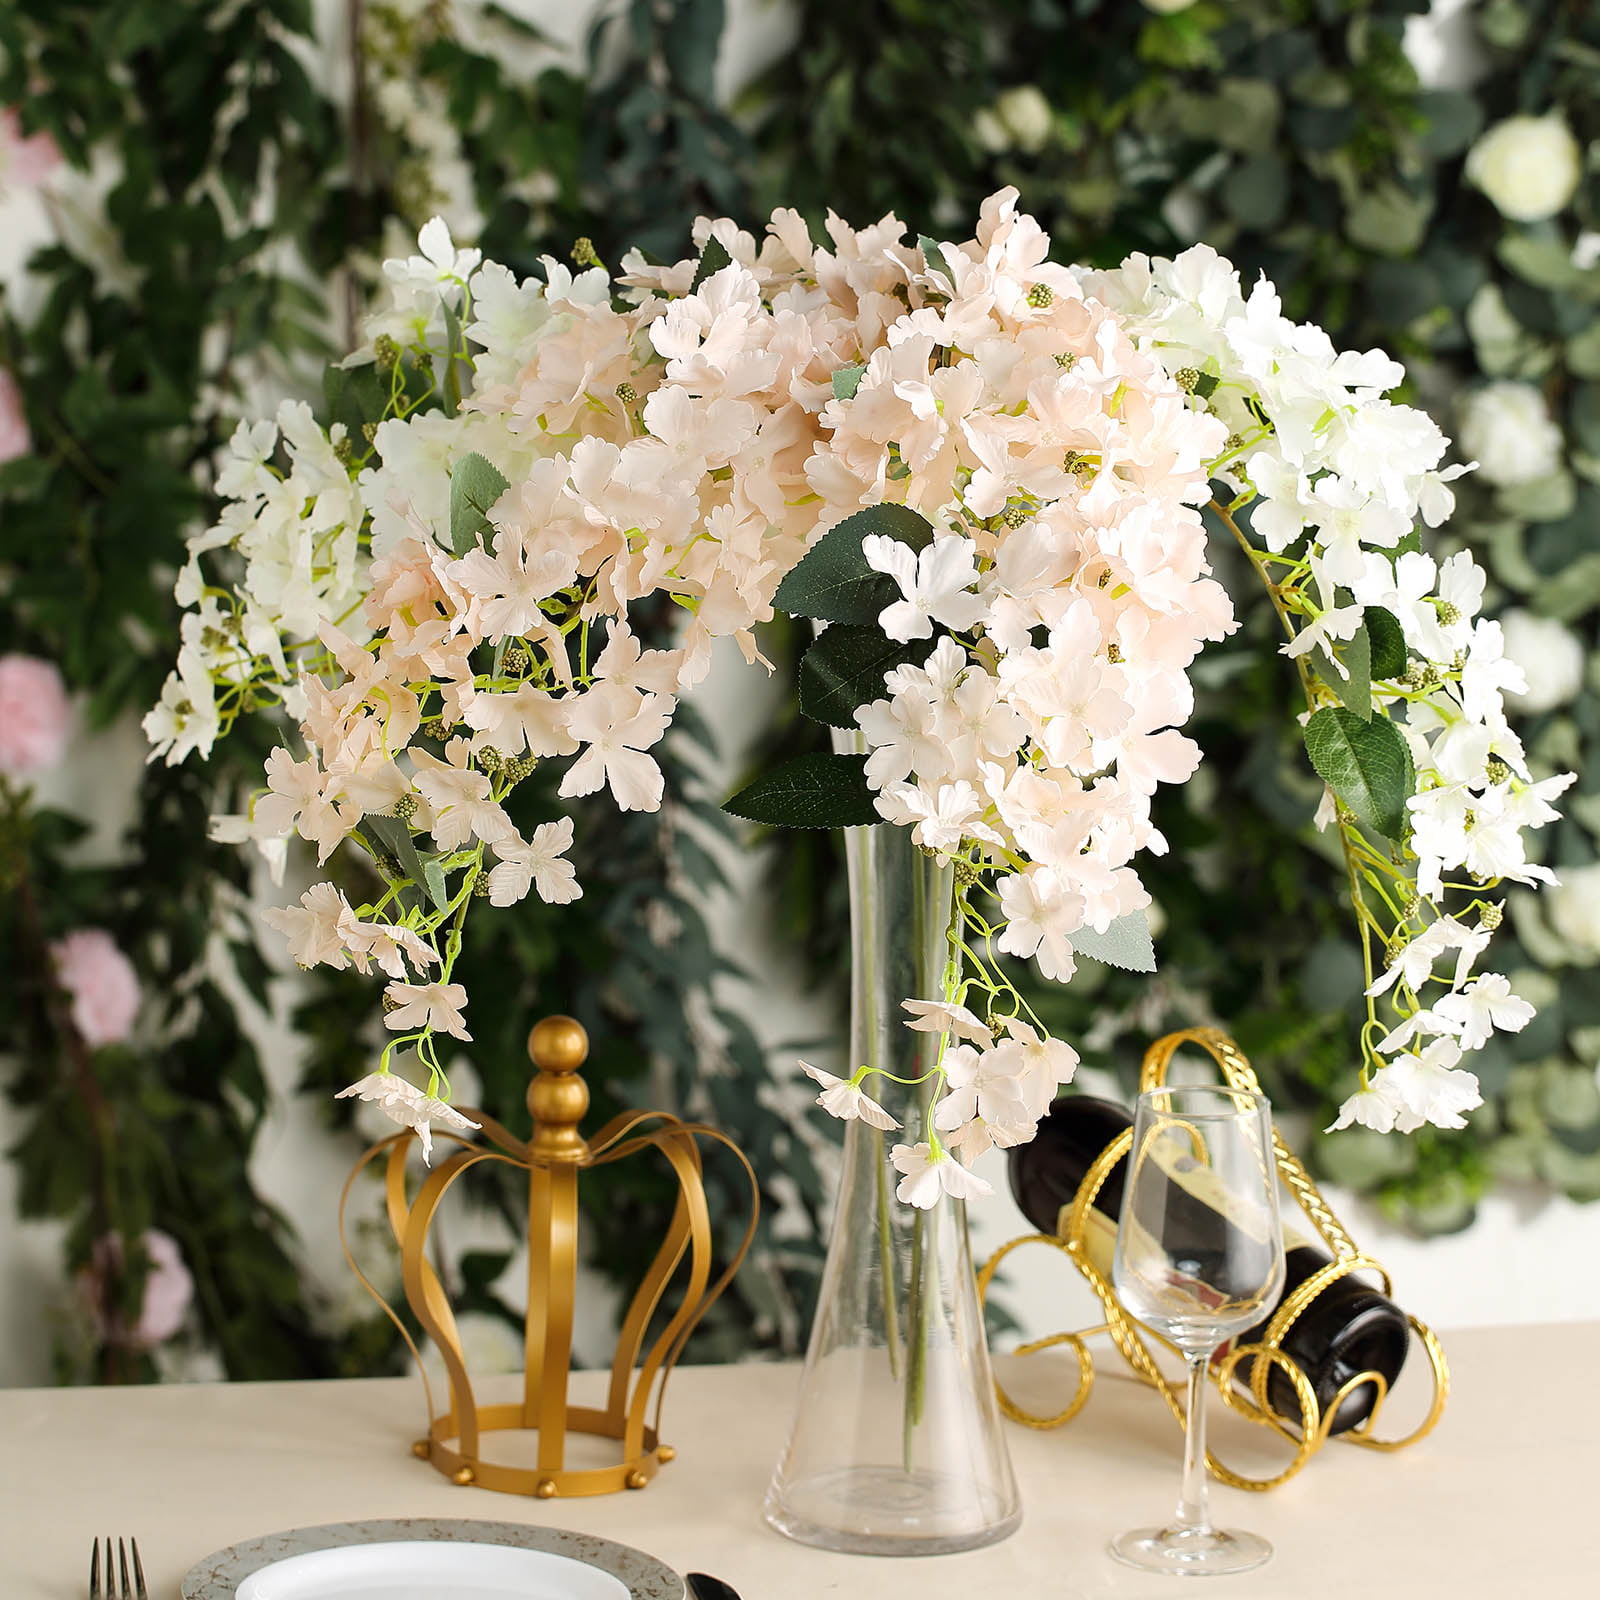 Balsacircle 41 Inch Tall 4 Stems Silk Hydrangea Flowers Home Wedding Party Artificial Bouquets Arrangements Centerpieces Walmart Com Walmart Com